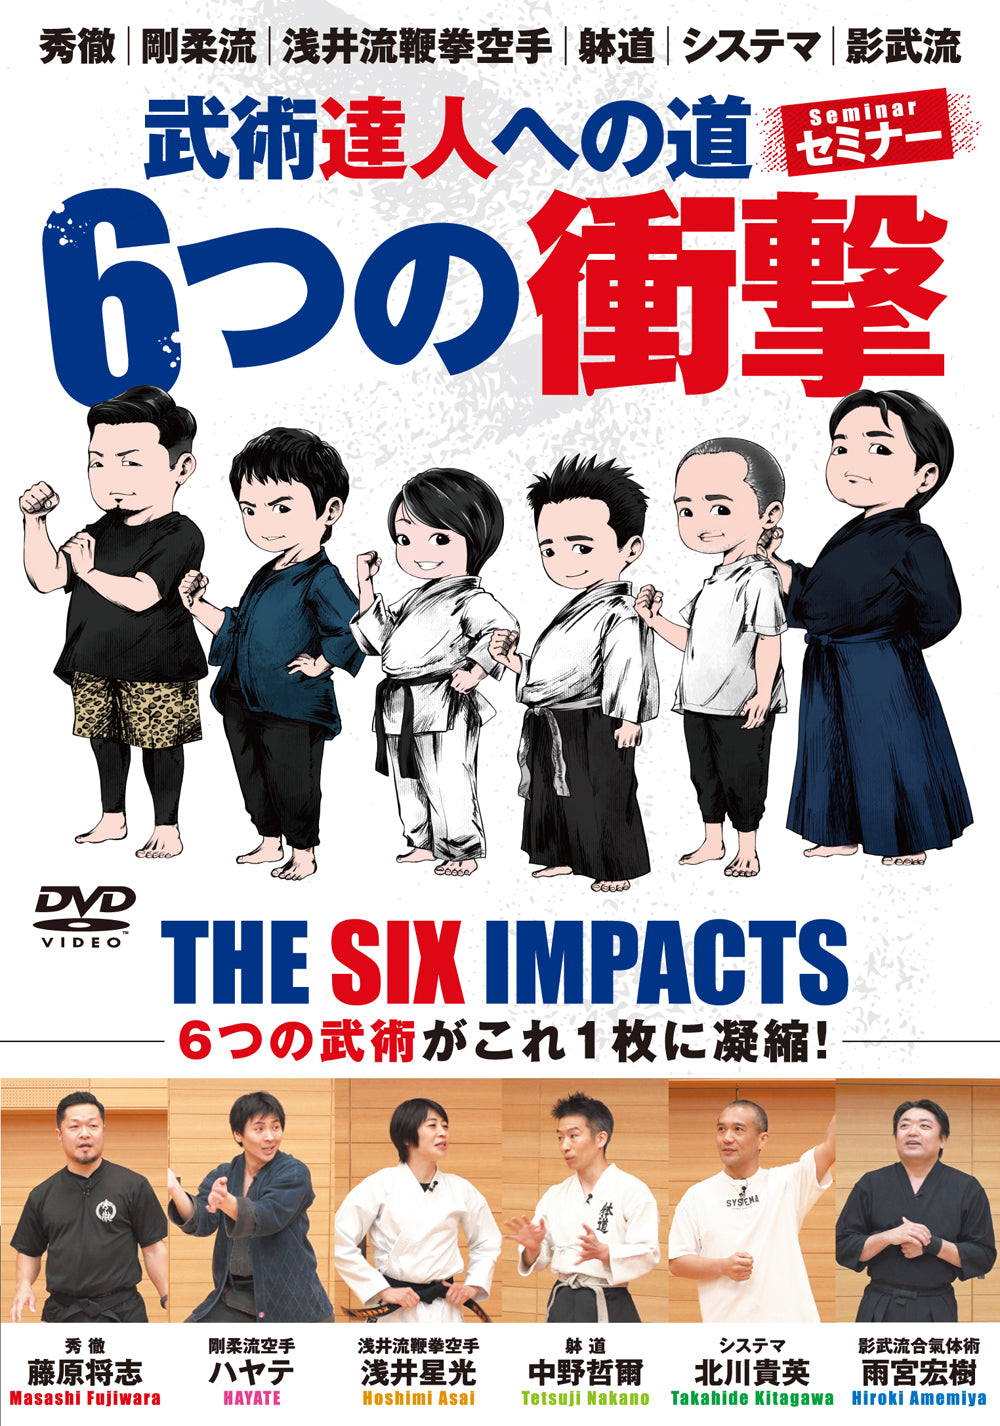 DVD del Seminario de los Seis Impactos